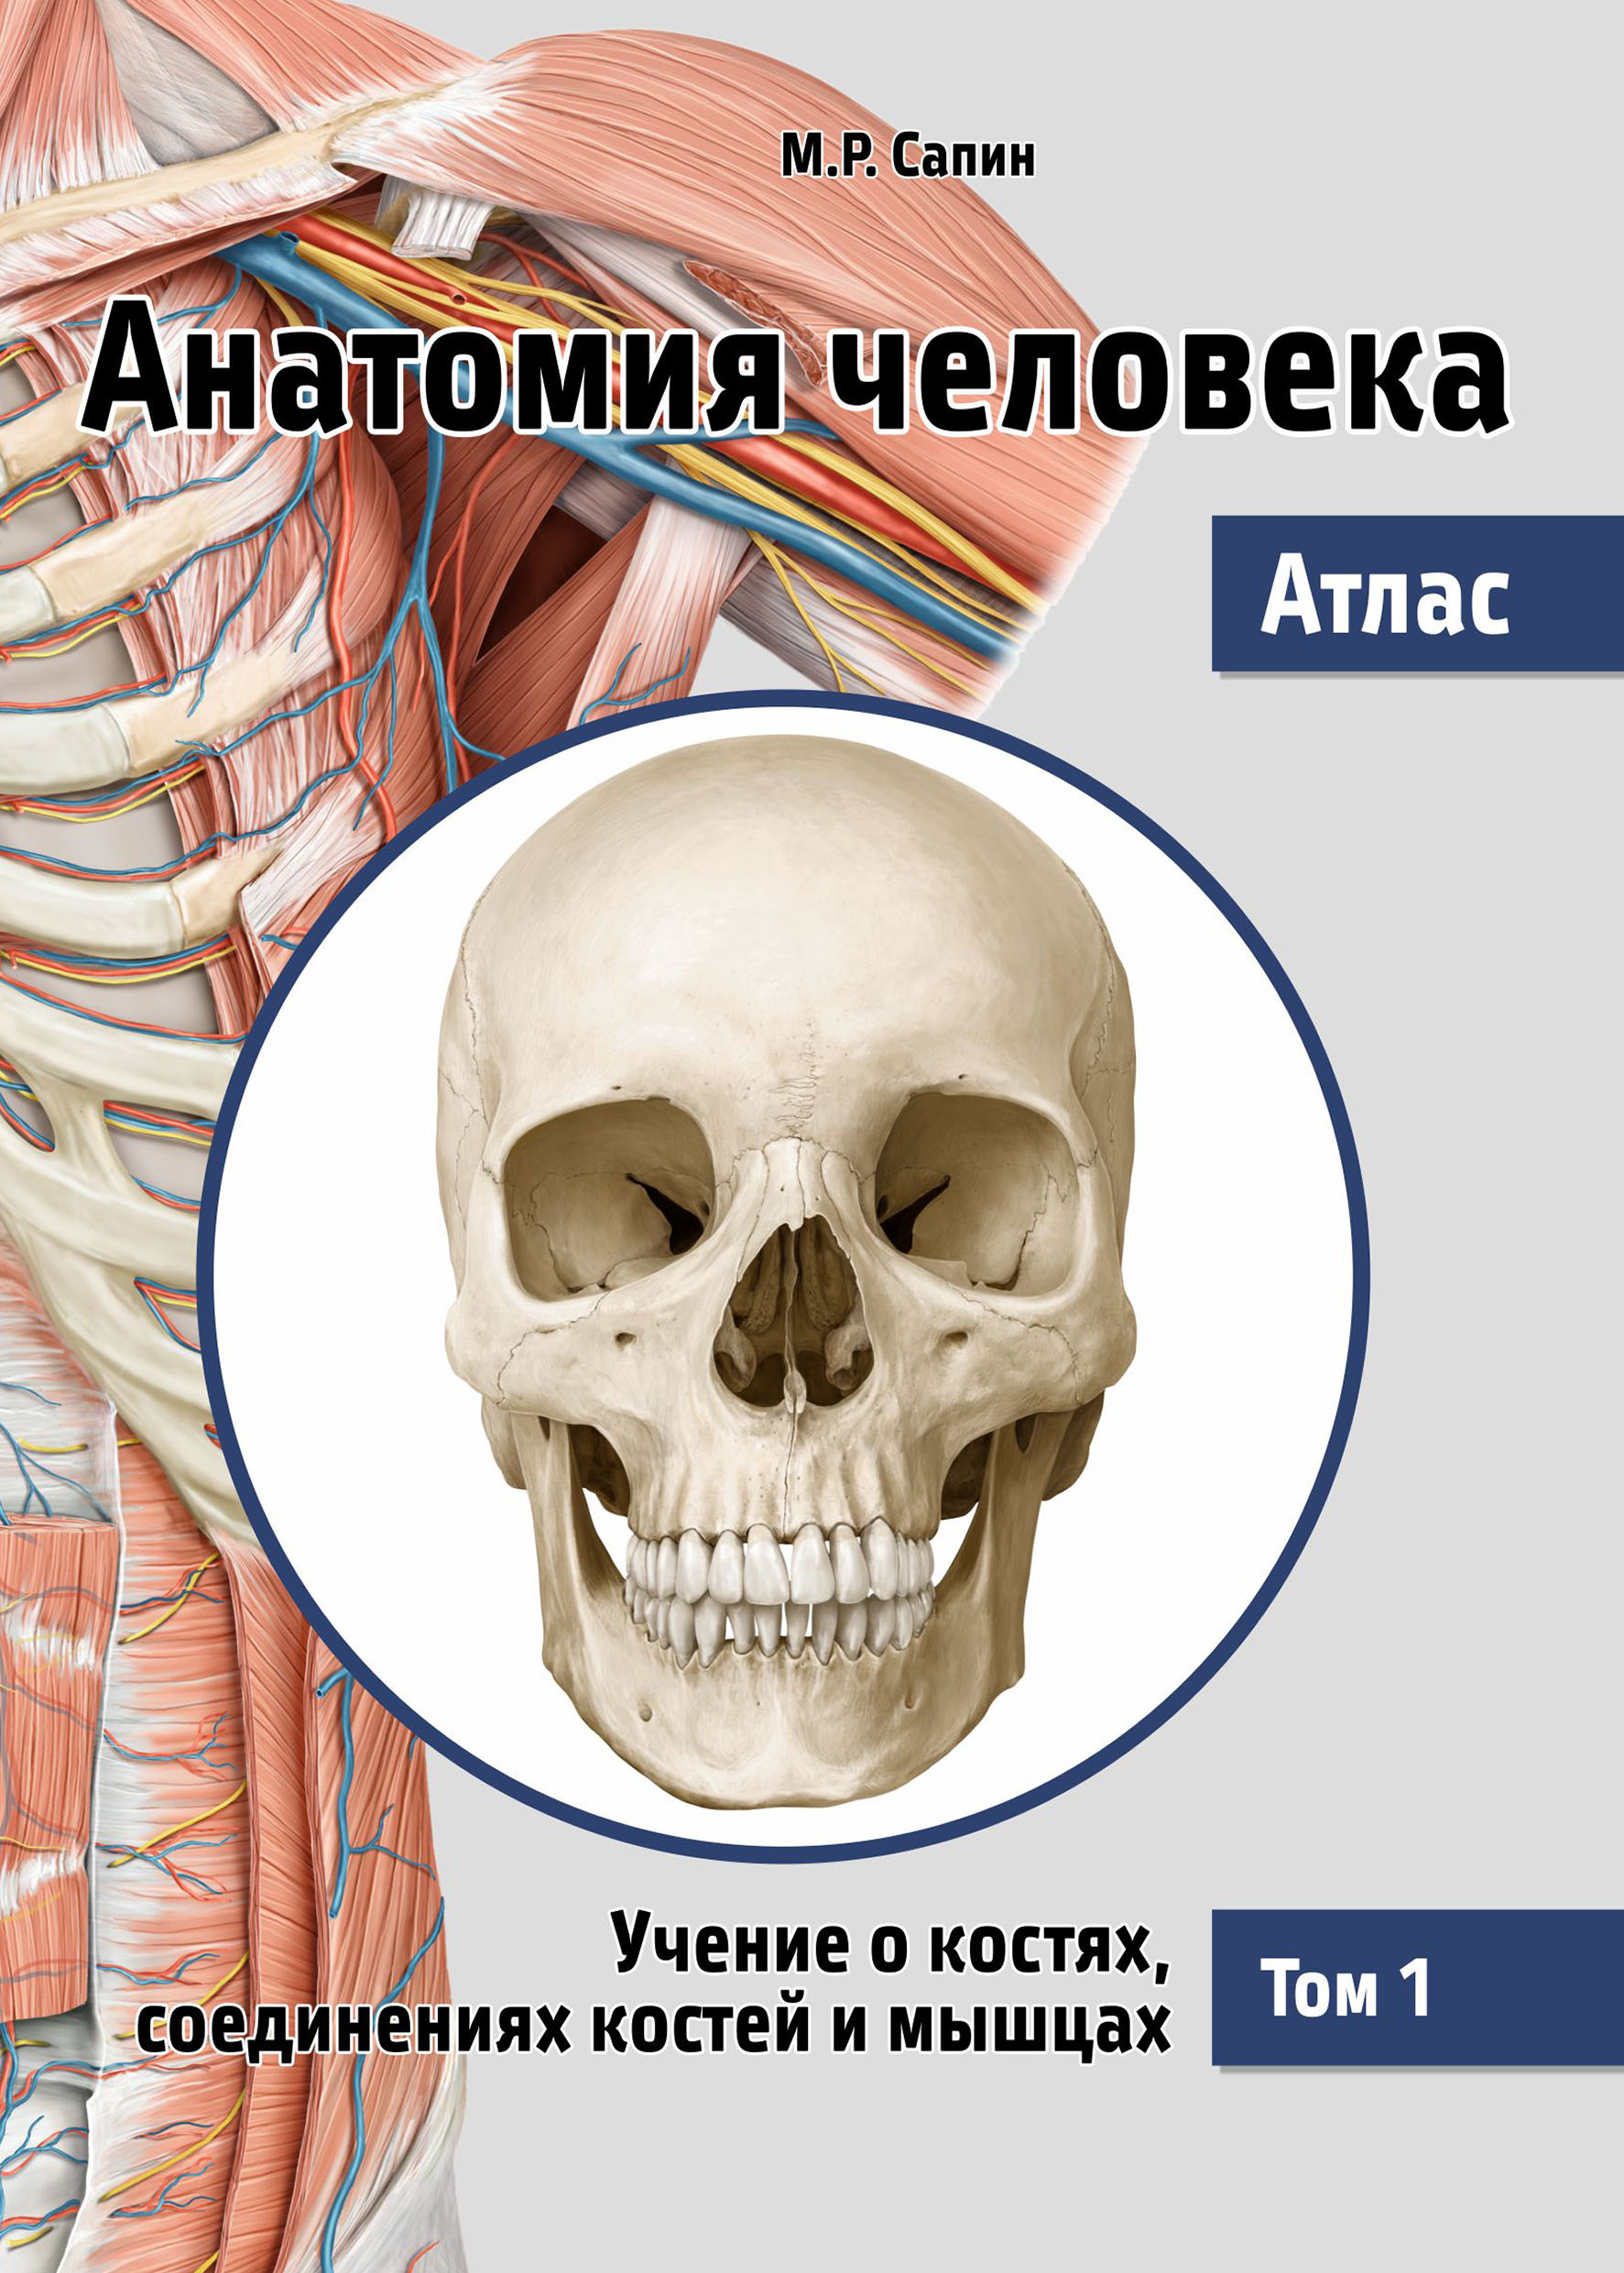 Сапин М.Р. Анатомия человека. Атлас. Учебное пособие. В 3-х томах. Том 1: Учение о костях, соединениях костей и мышцах 